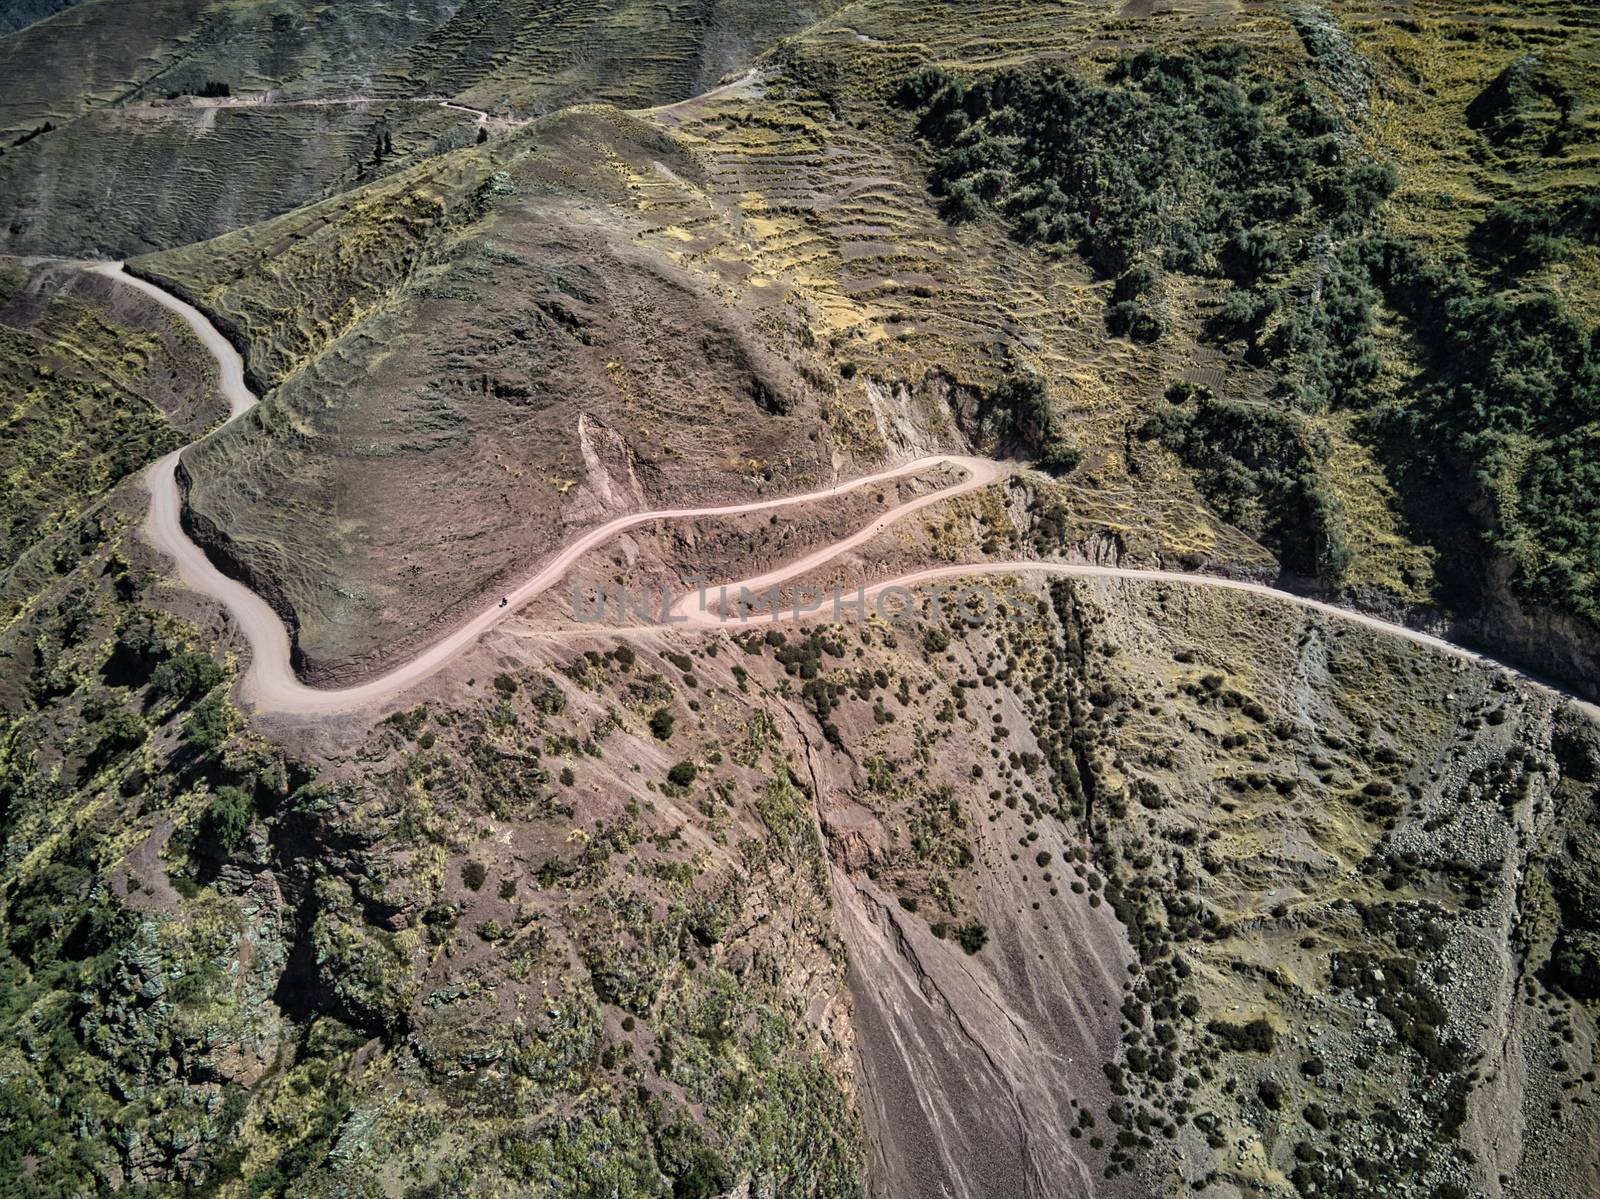 Mountain road in Peru by mevert